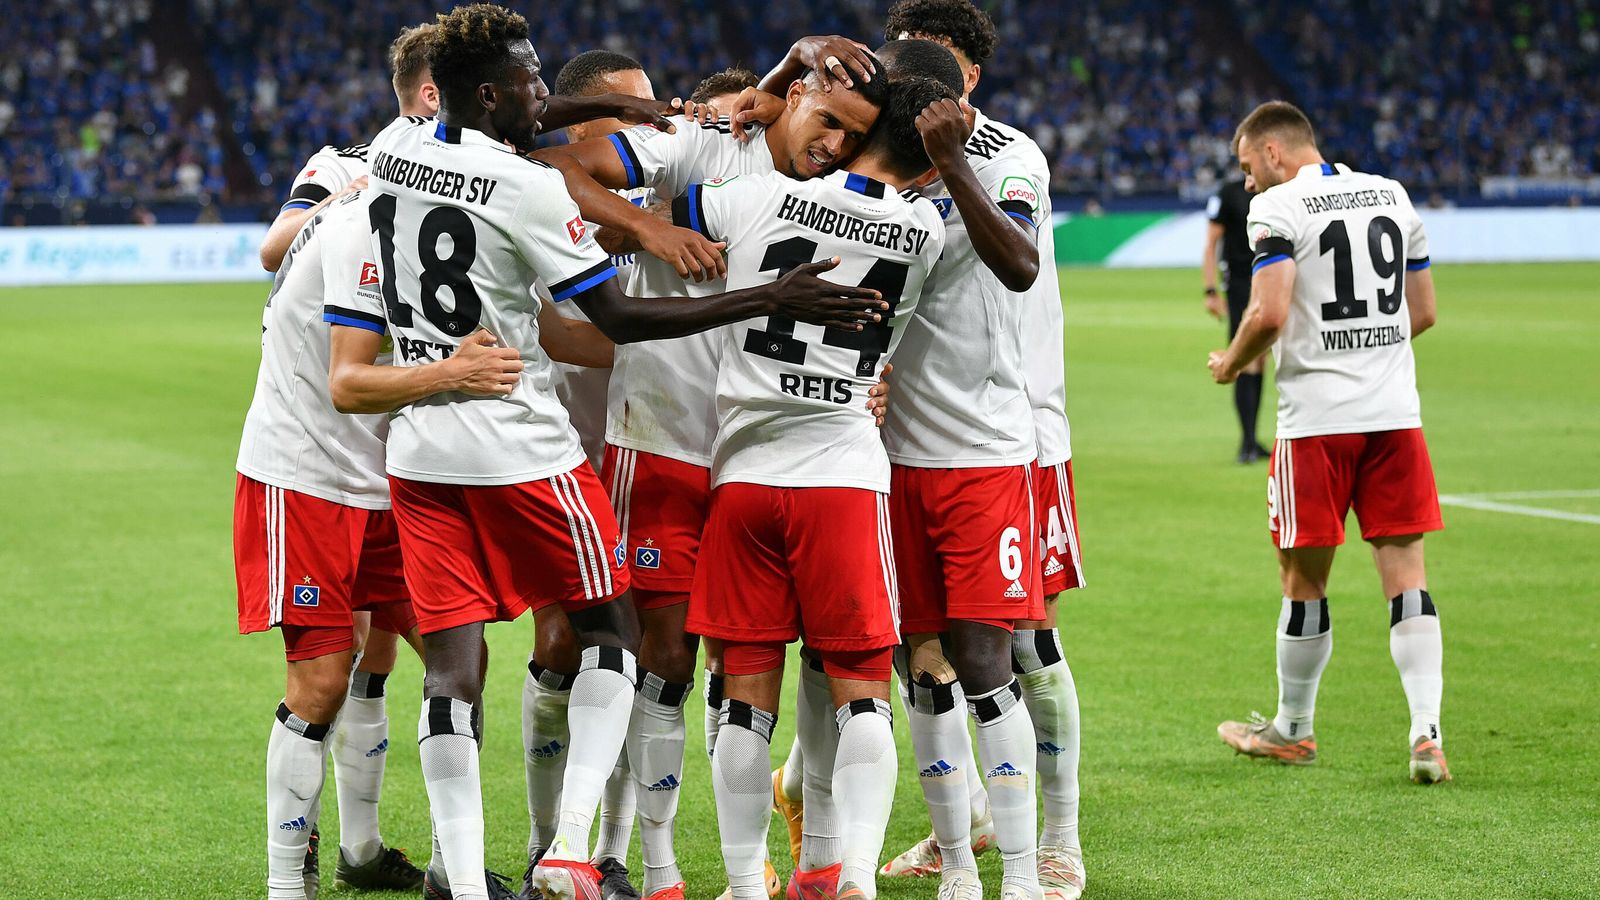 Hamburger SV News: Trotz mäßigem Start - der HSV scheint sich zu